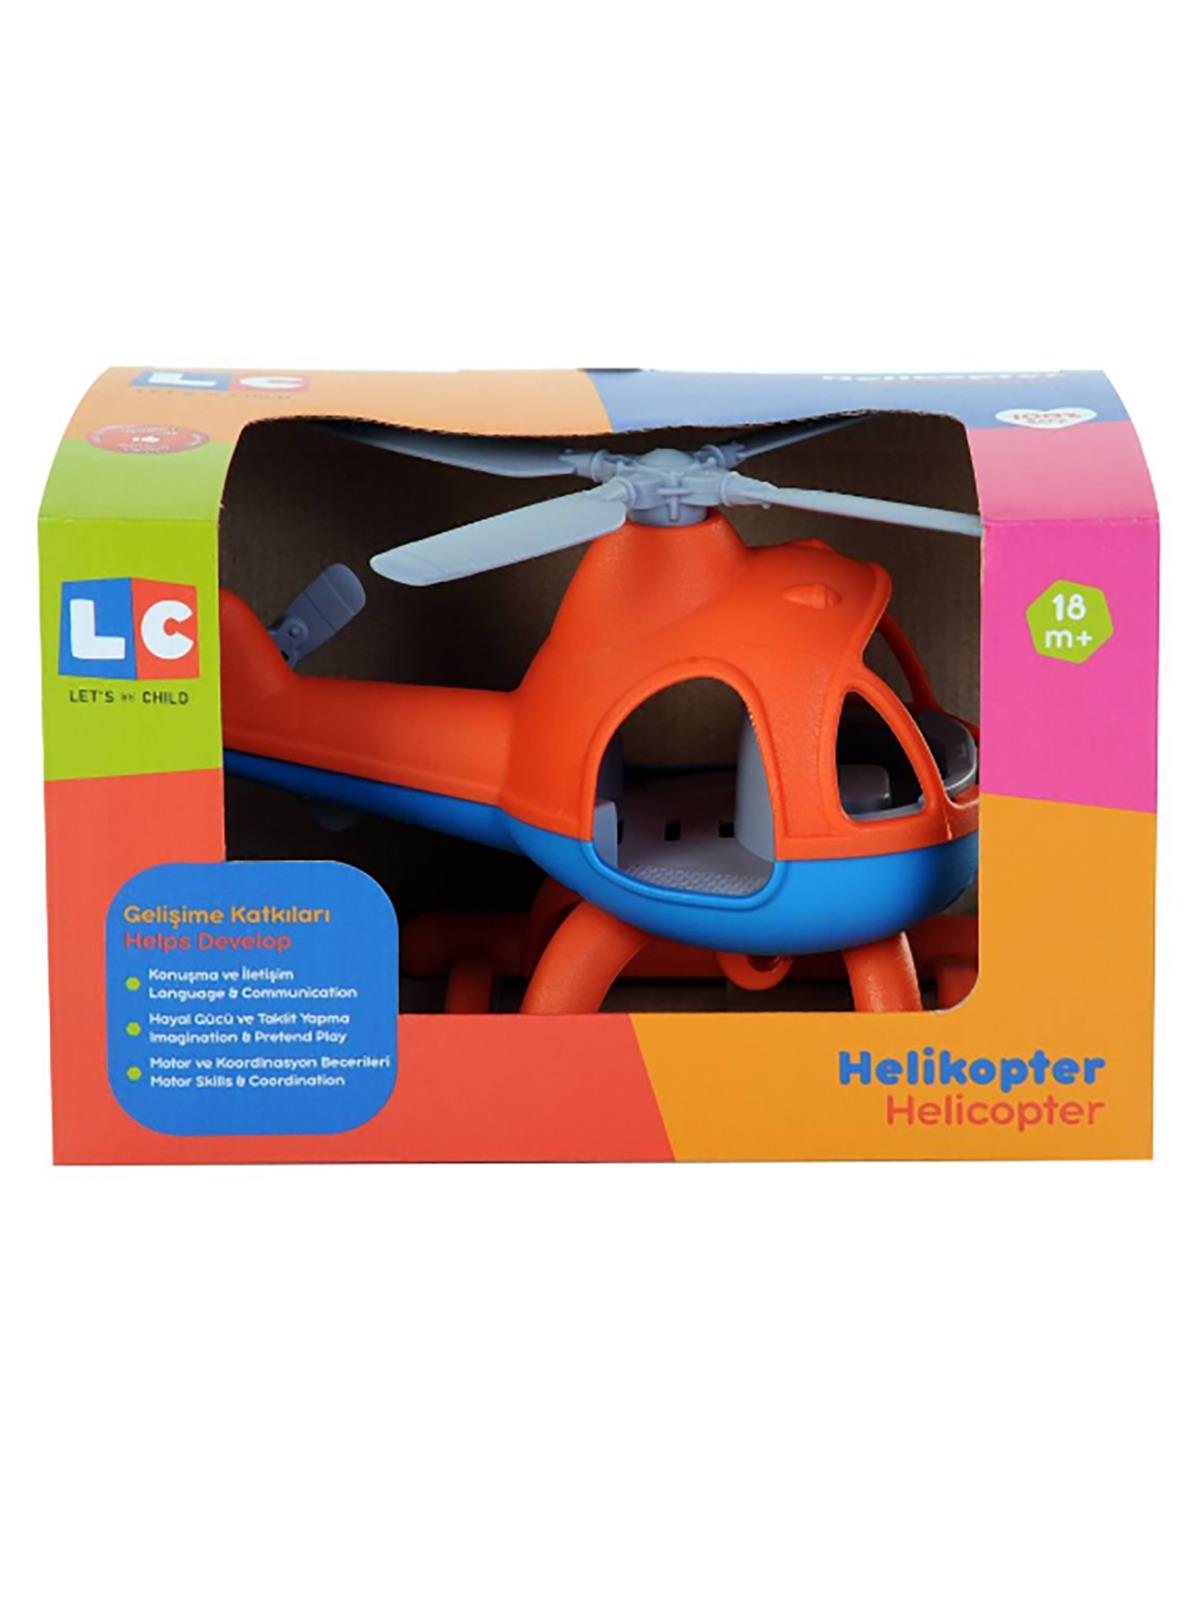 Let's Be Child Helikopter Turuncu